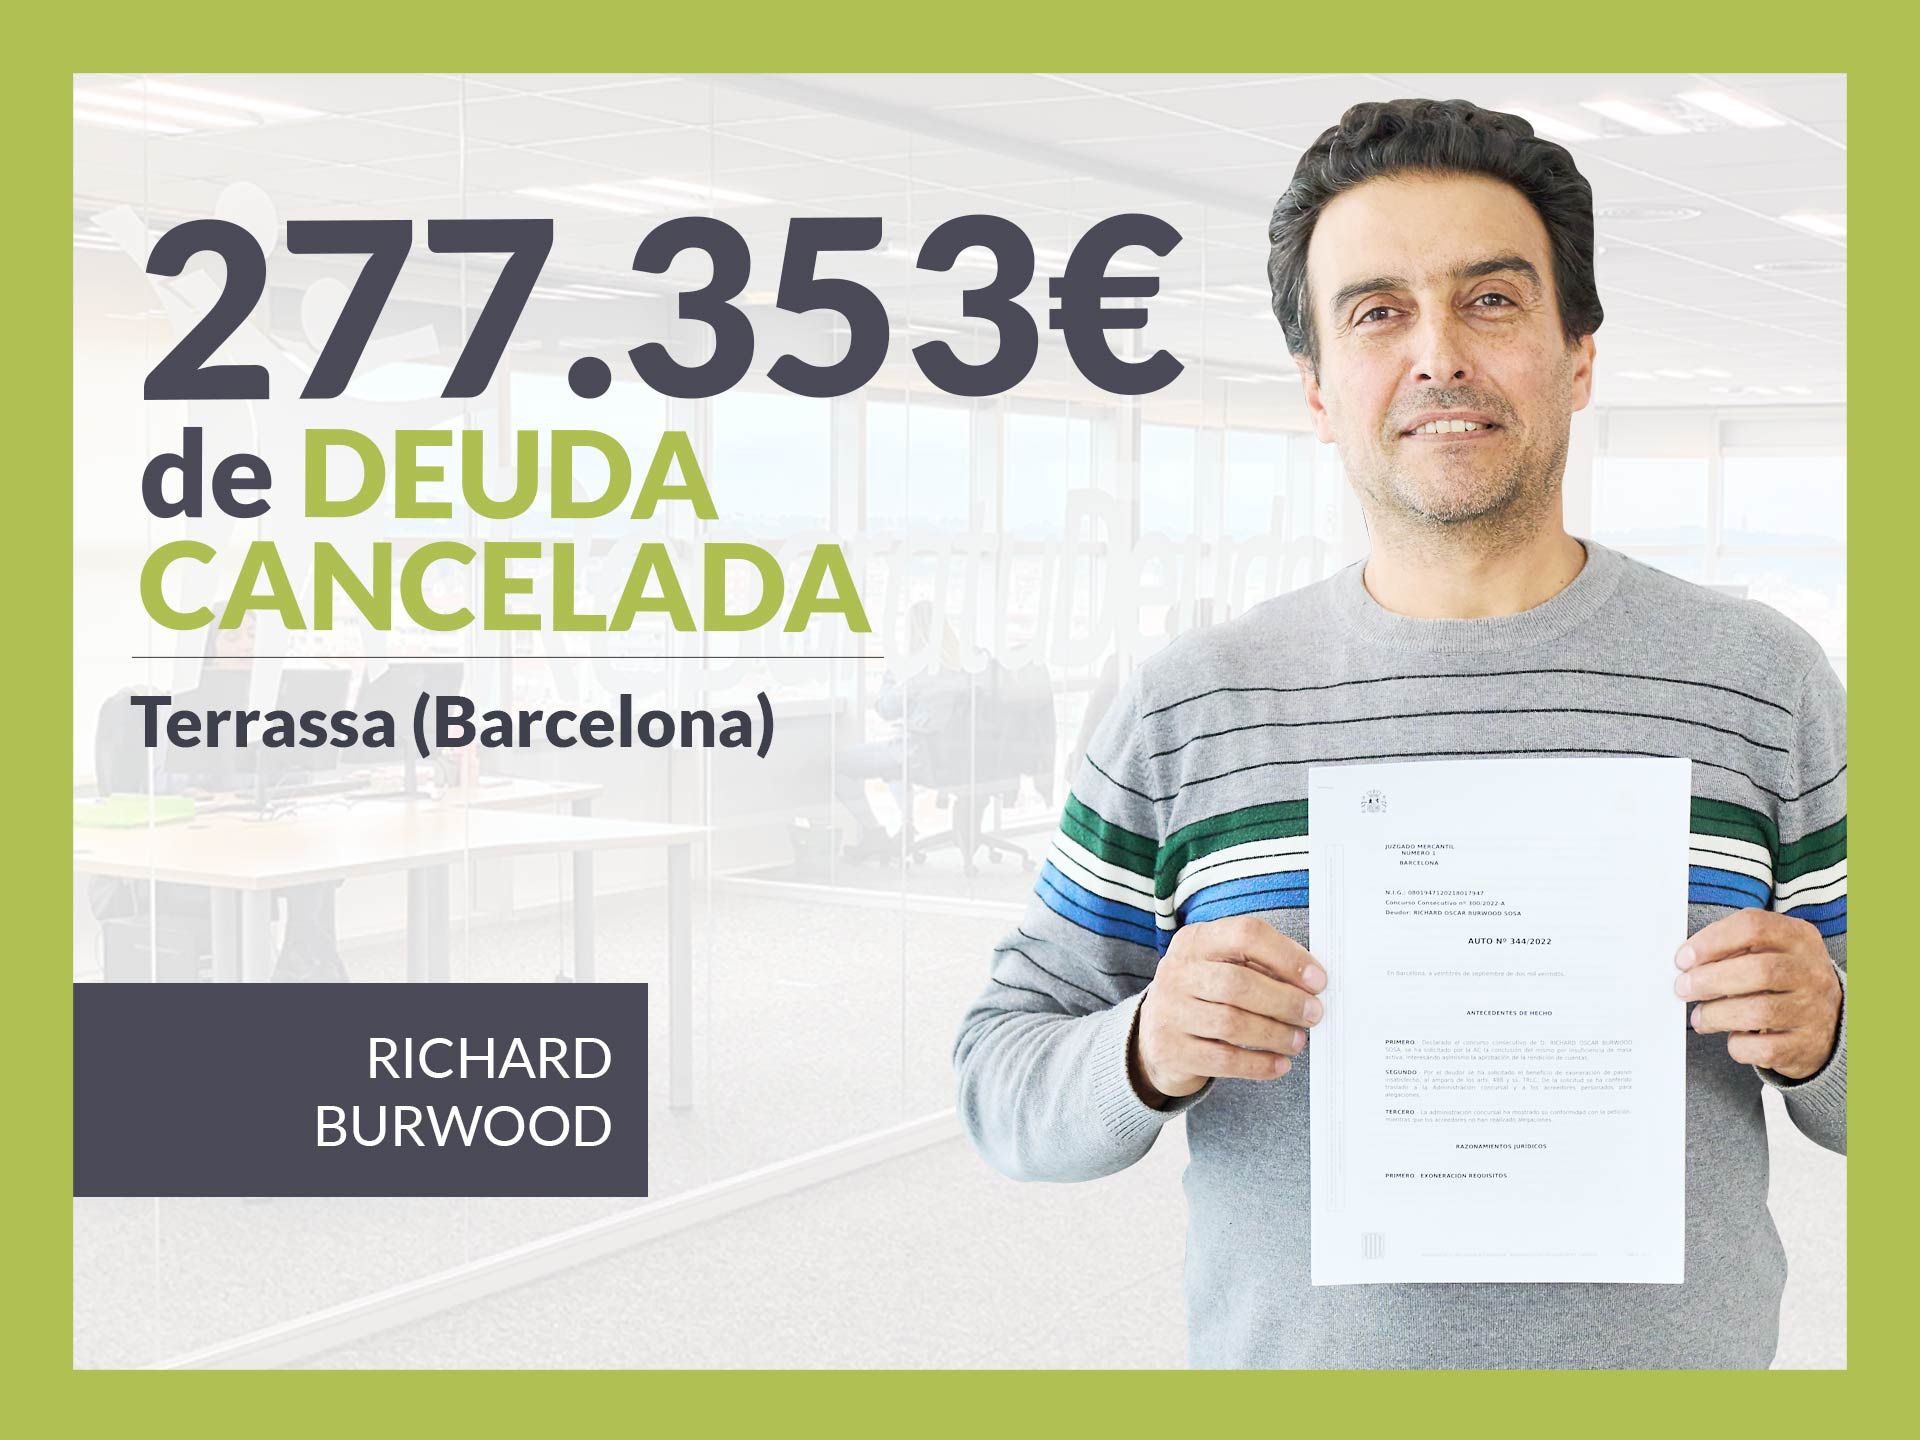 Repara tu Deuda Abogados cancela 277.353 ? en Terrassa (Barcelona) con la Ley de Segunda Oportunidad